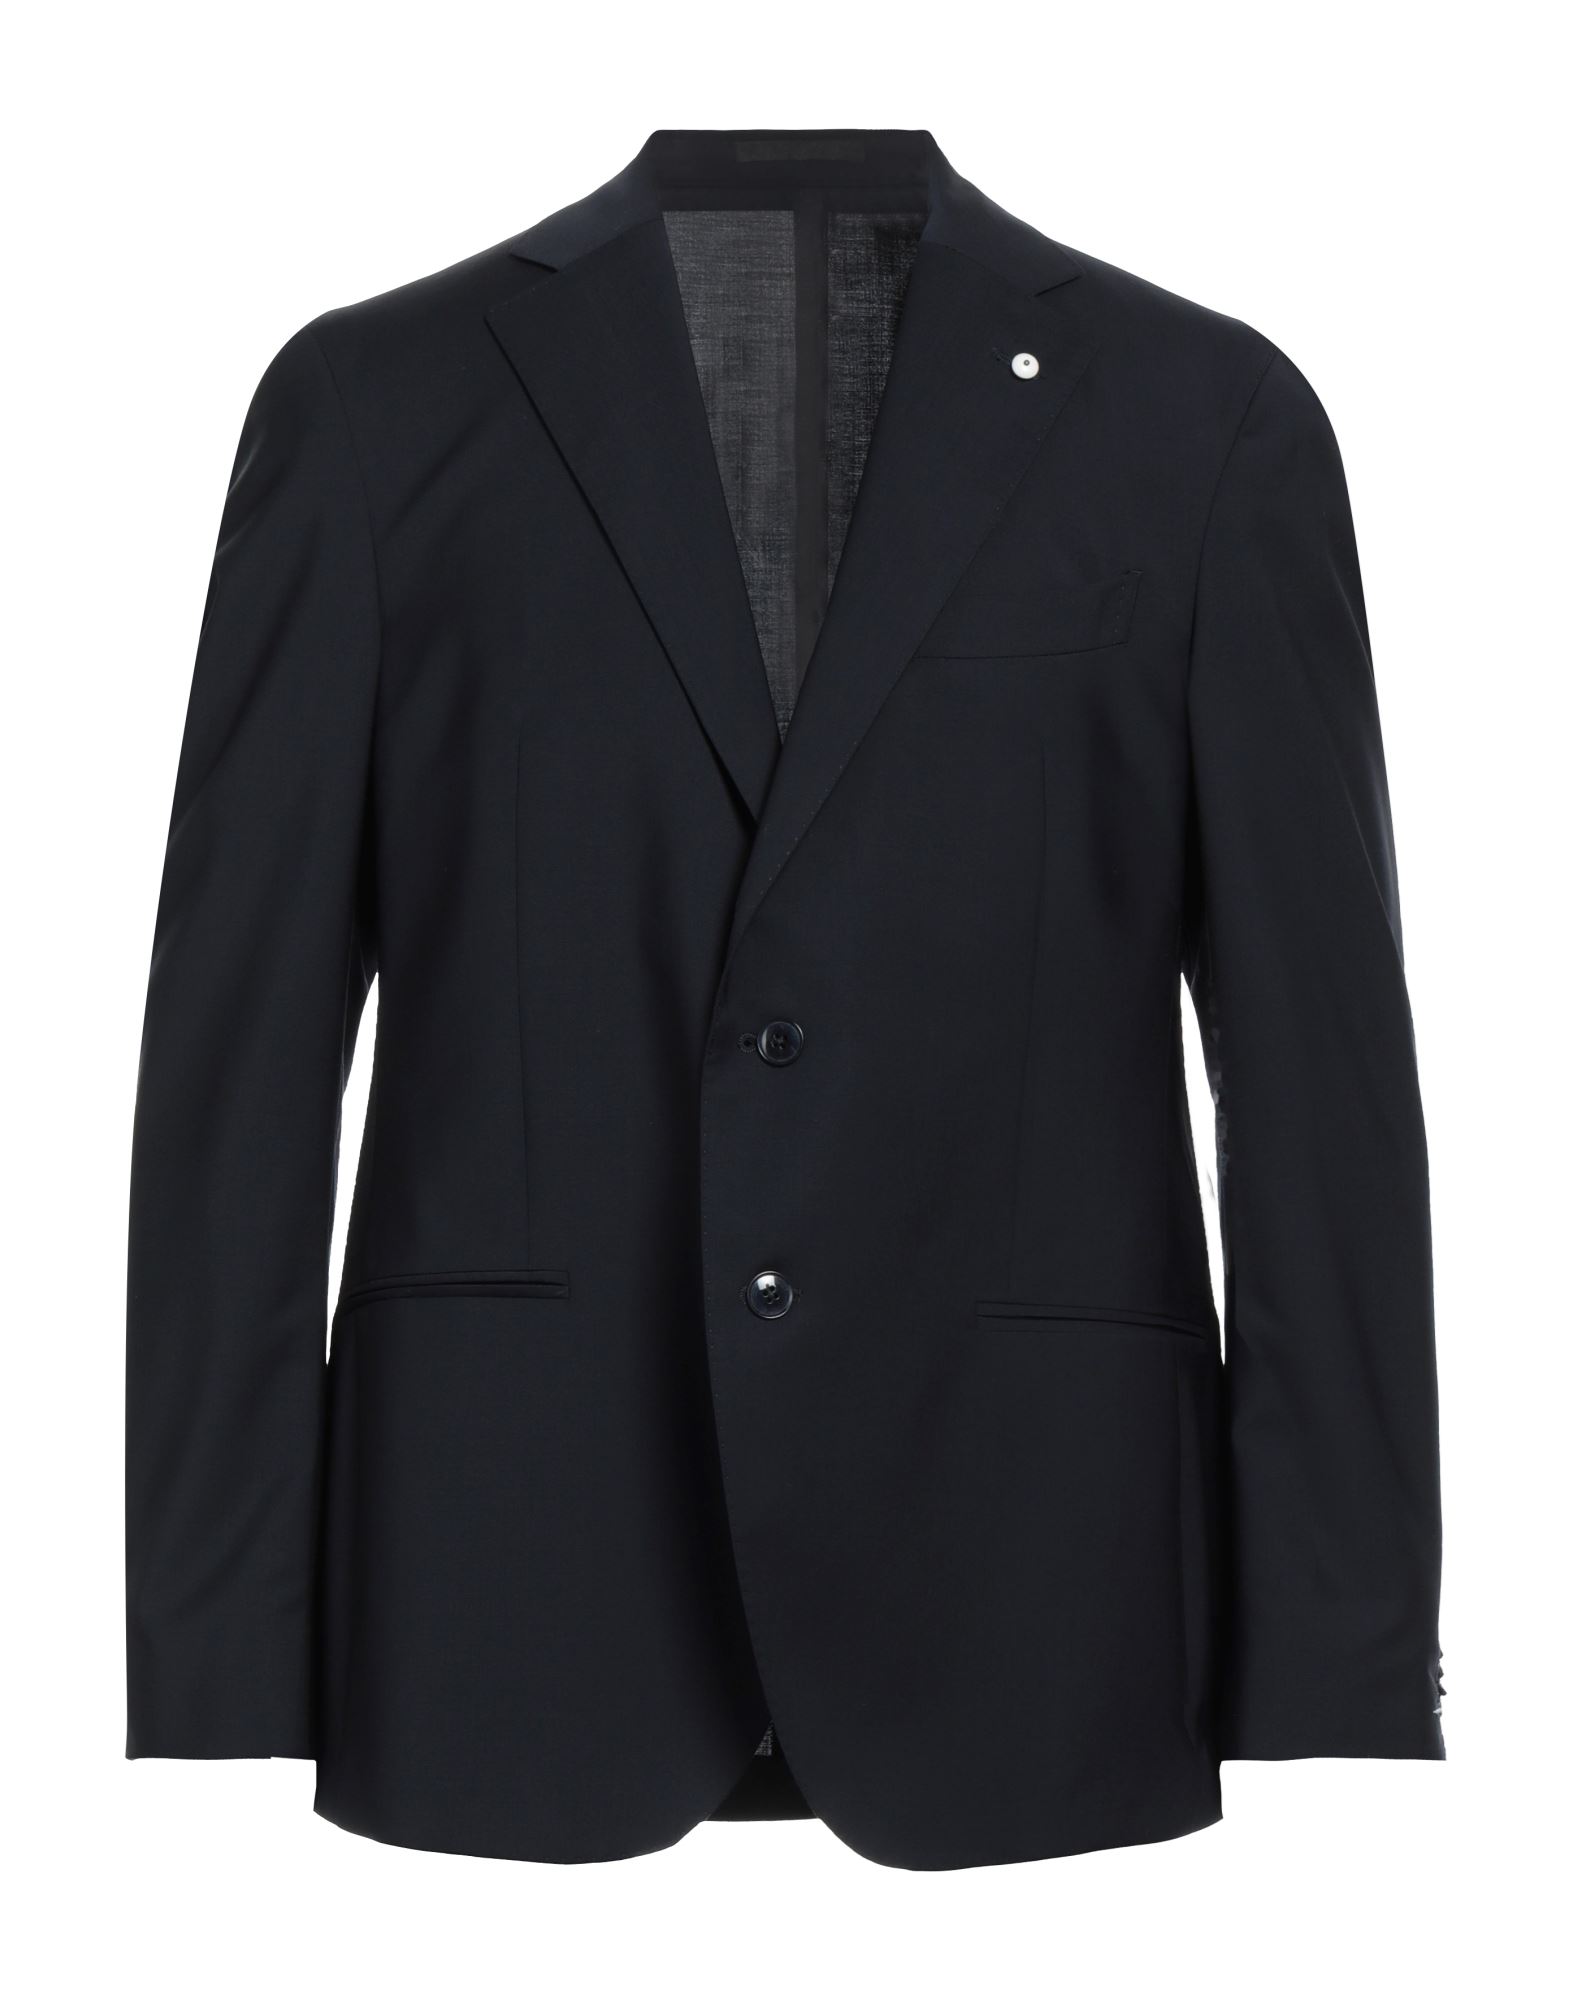 Lbm L.b.m. 1911 Suit Jackets In Blue